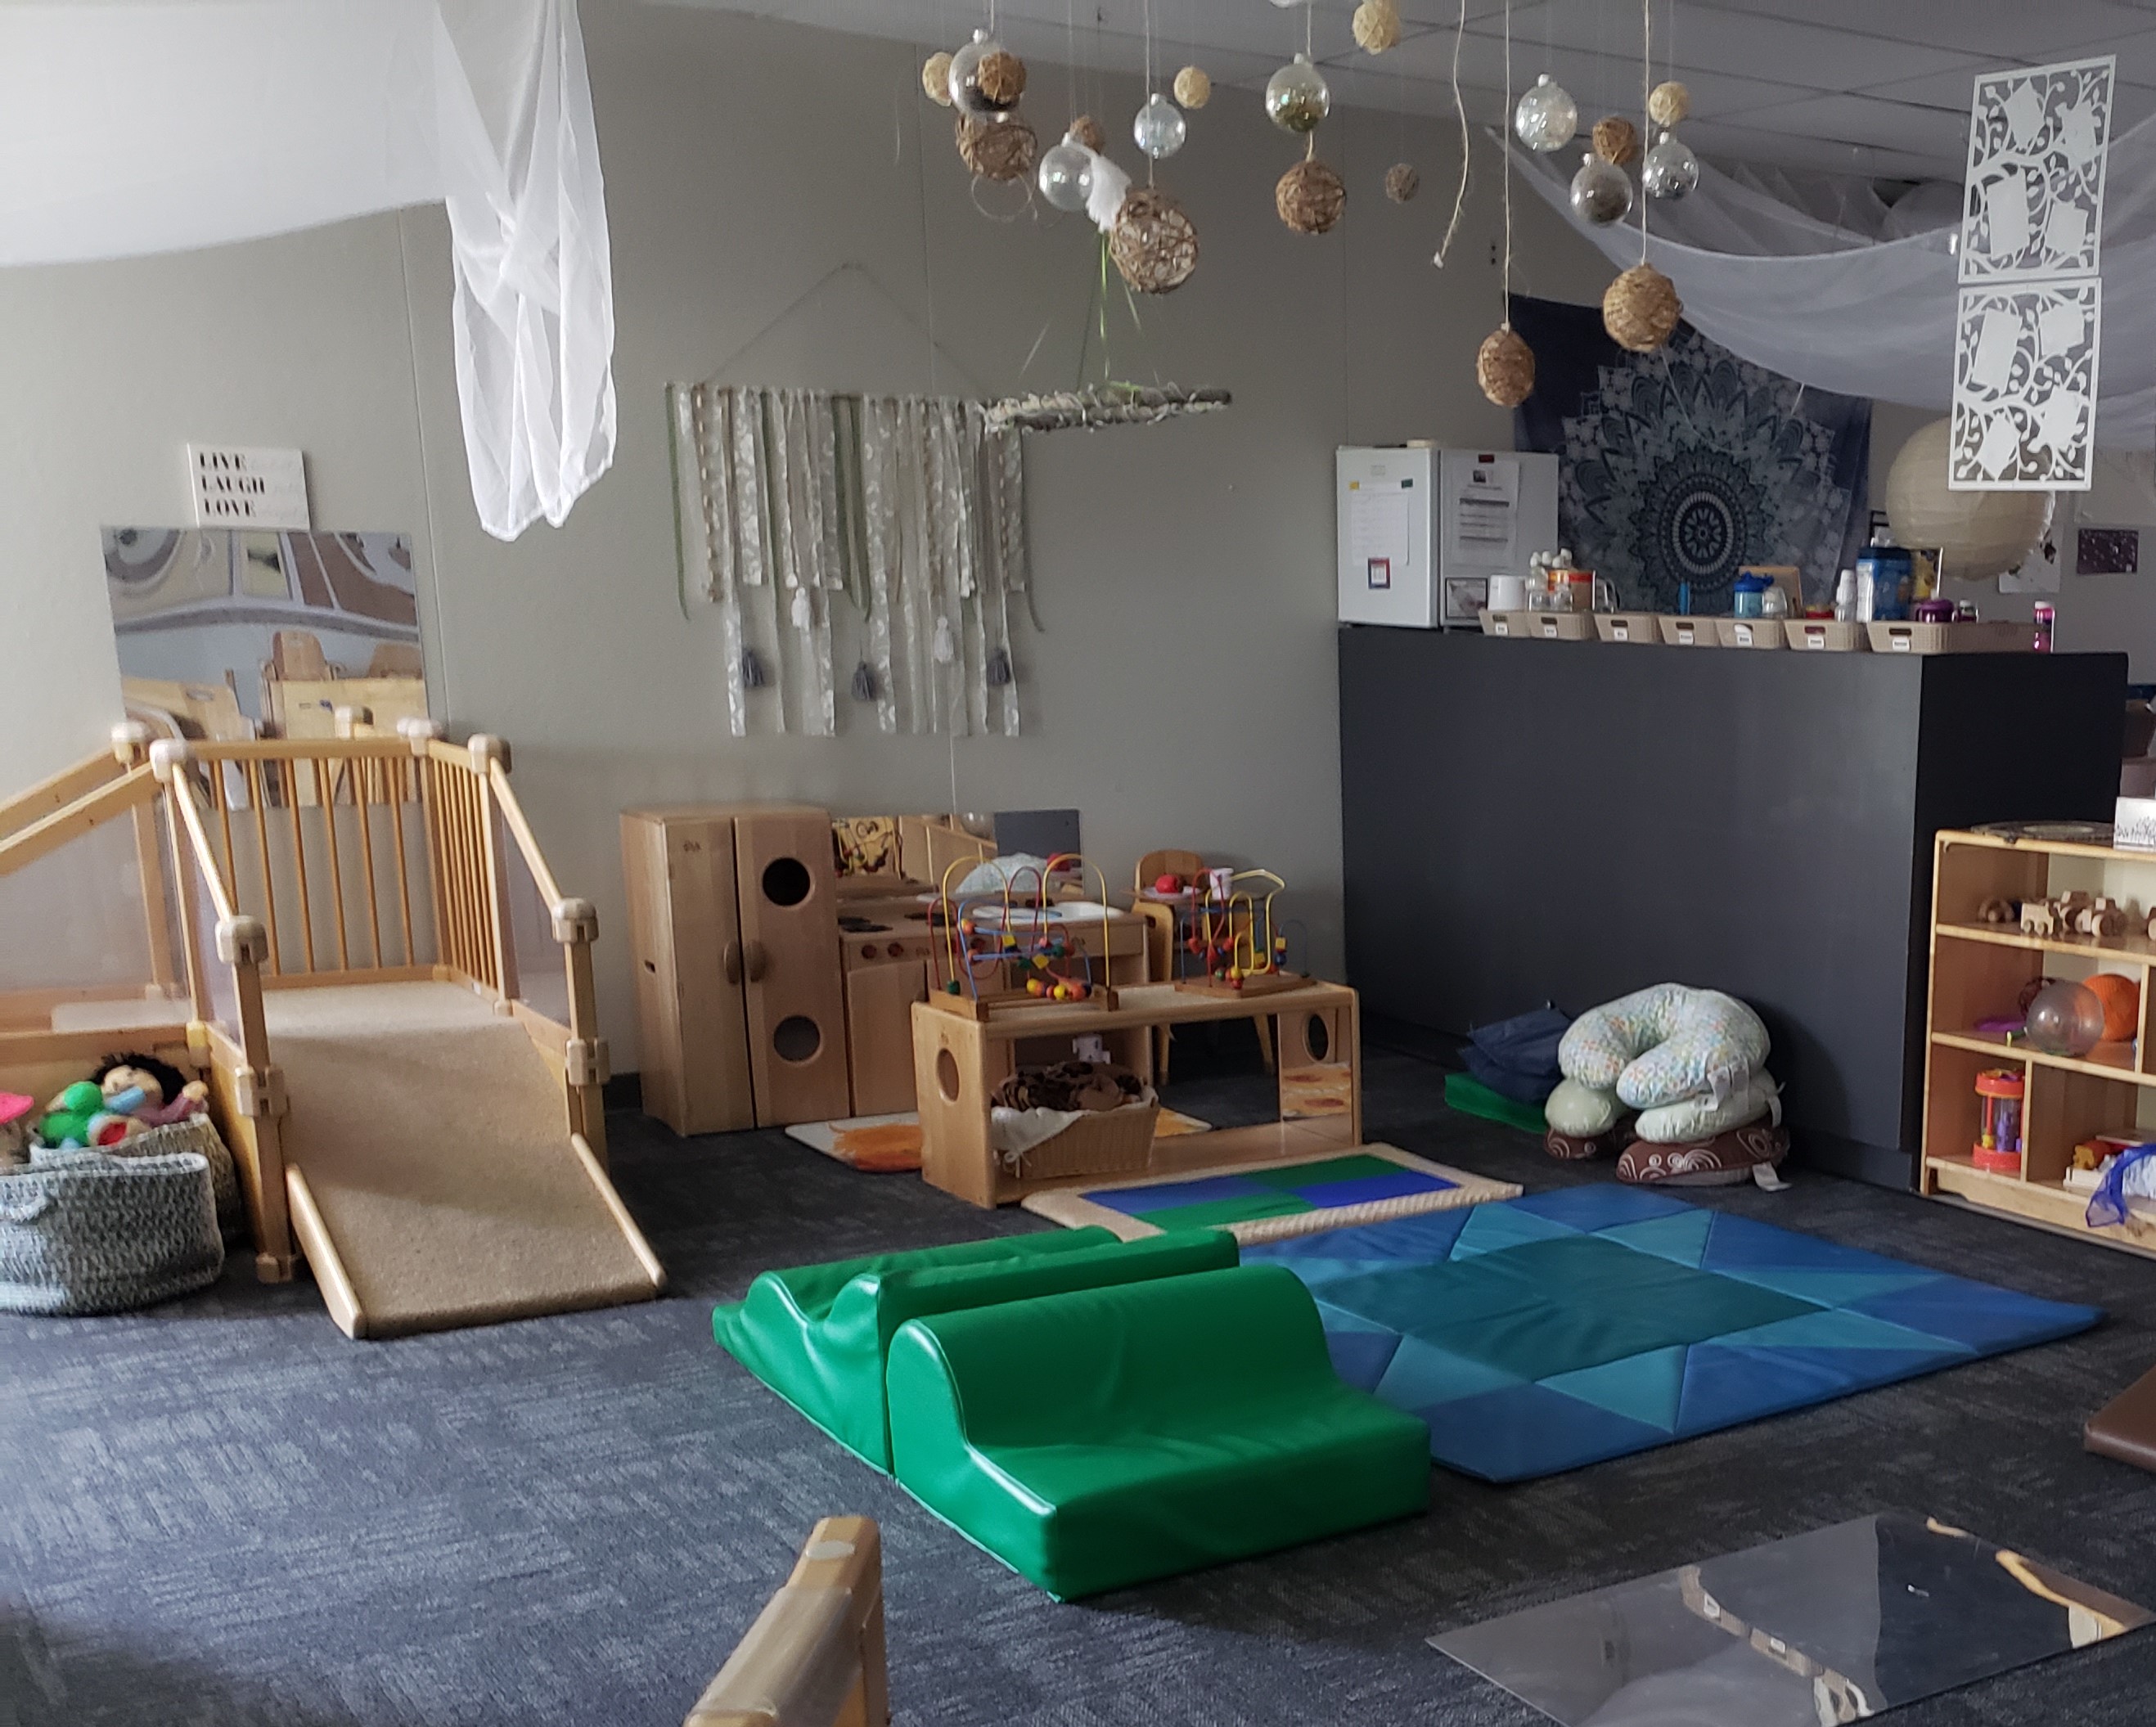 Ambiente infantil que contiene una pequeña estructura de escalada, cocina de juegos de madera, esteras de plástico en el piso y una pequeña estructura de escalada de espuma.